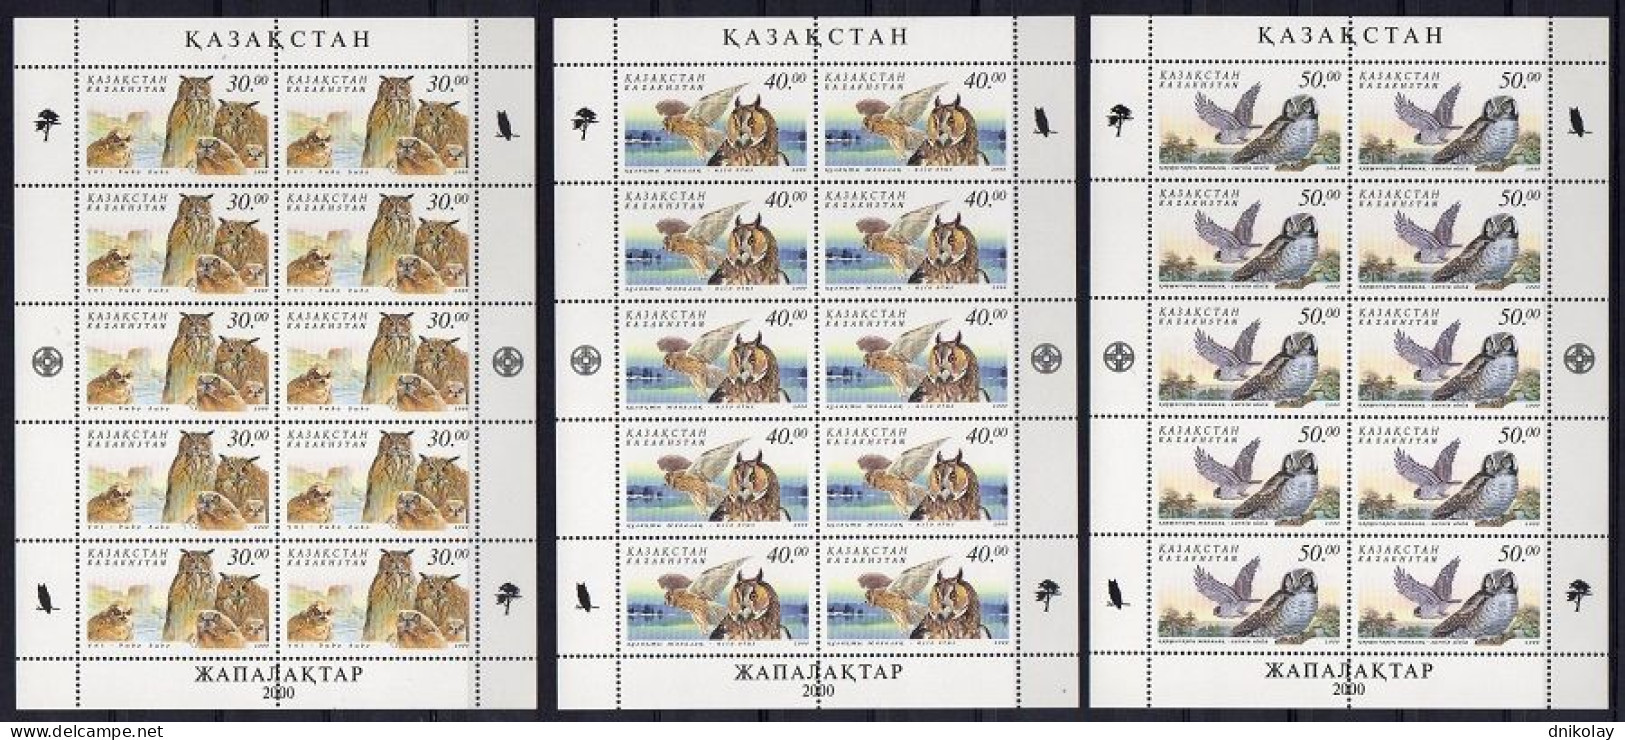 2001 326 Kazakhstan Owls MNH - Kasachstan